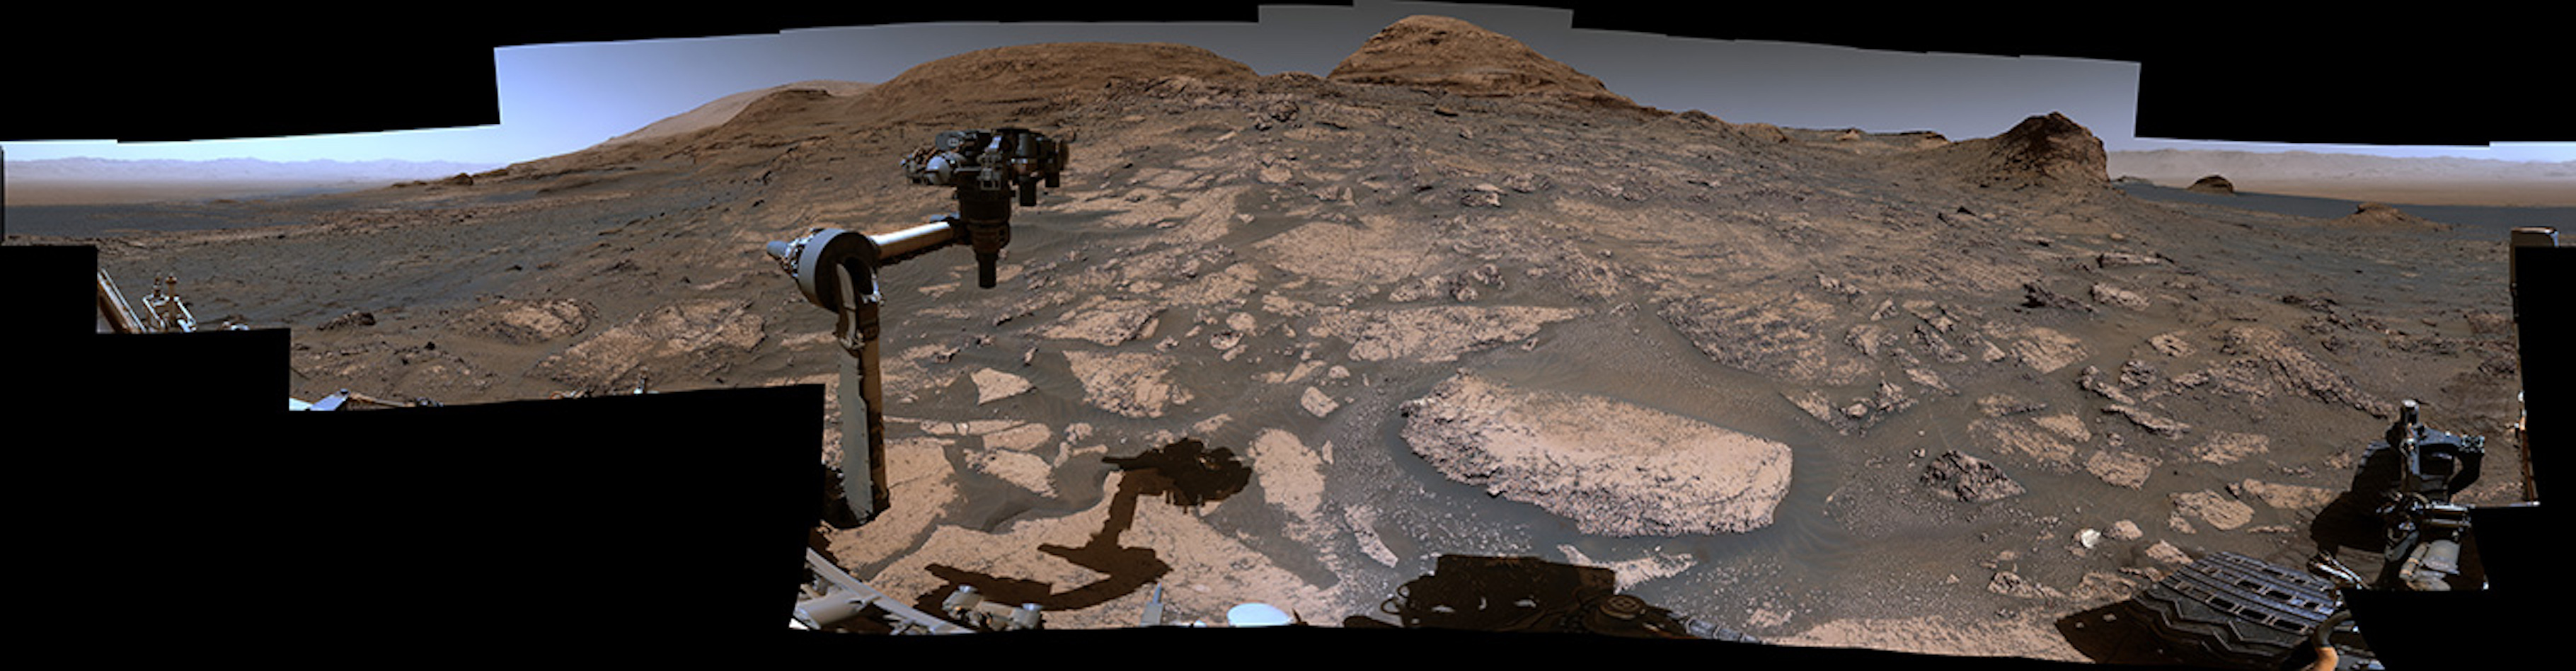 Le 3 juillet 2021, près de neuf ans après s’être posé à la surface de Mars, le rover de la Nasa Curiosity renvoyait vers la Terre les 129 images qui ont permis de construire ce magnifique panorama. © Nasa, JPL-Caltech, MSSS